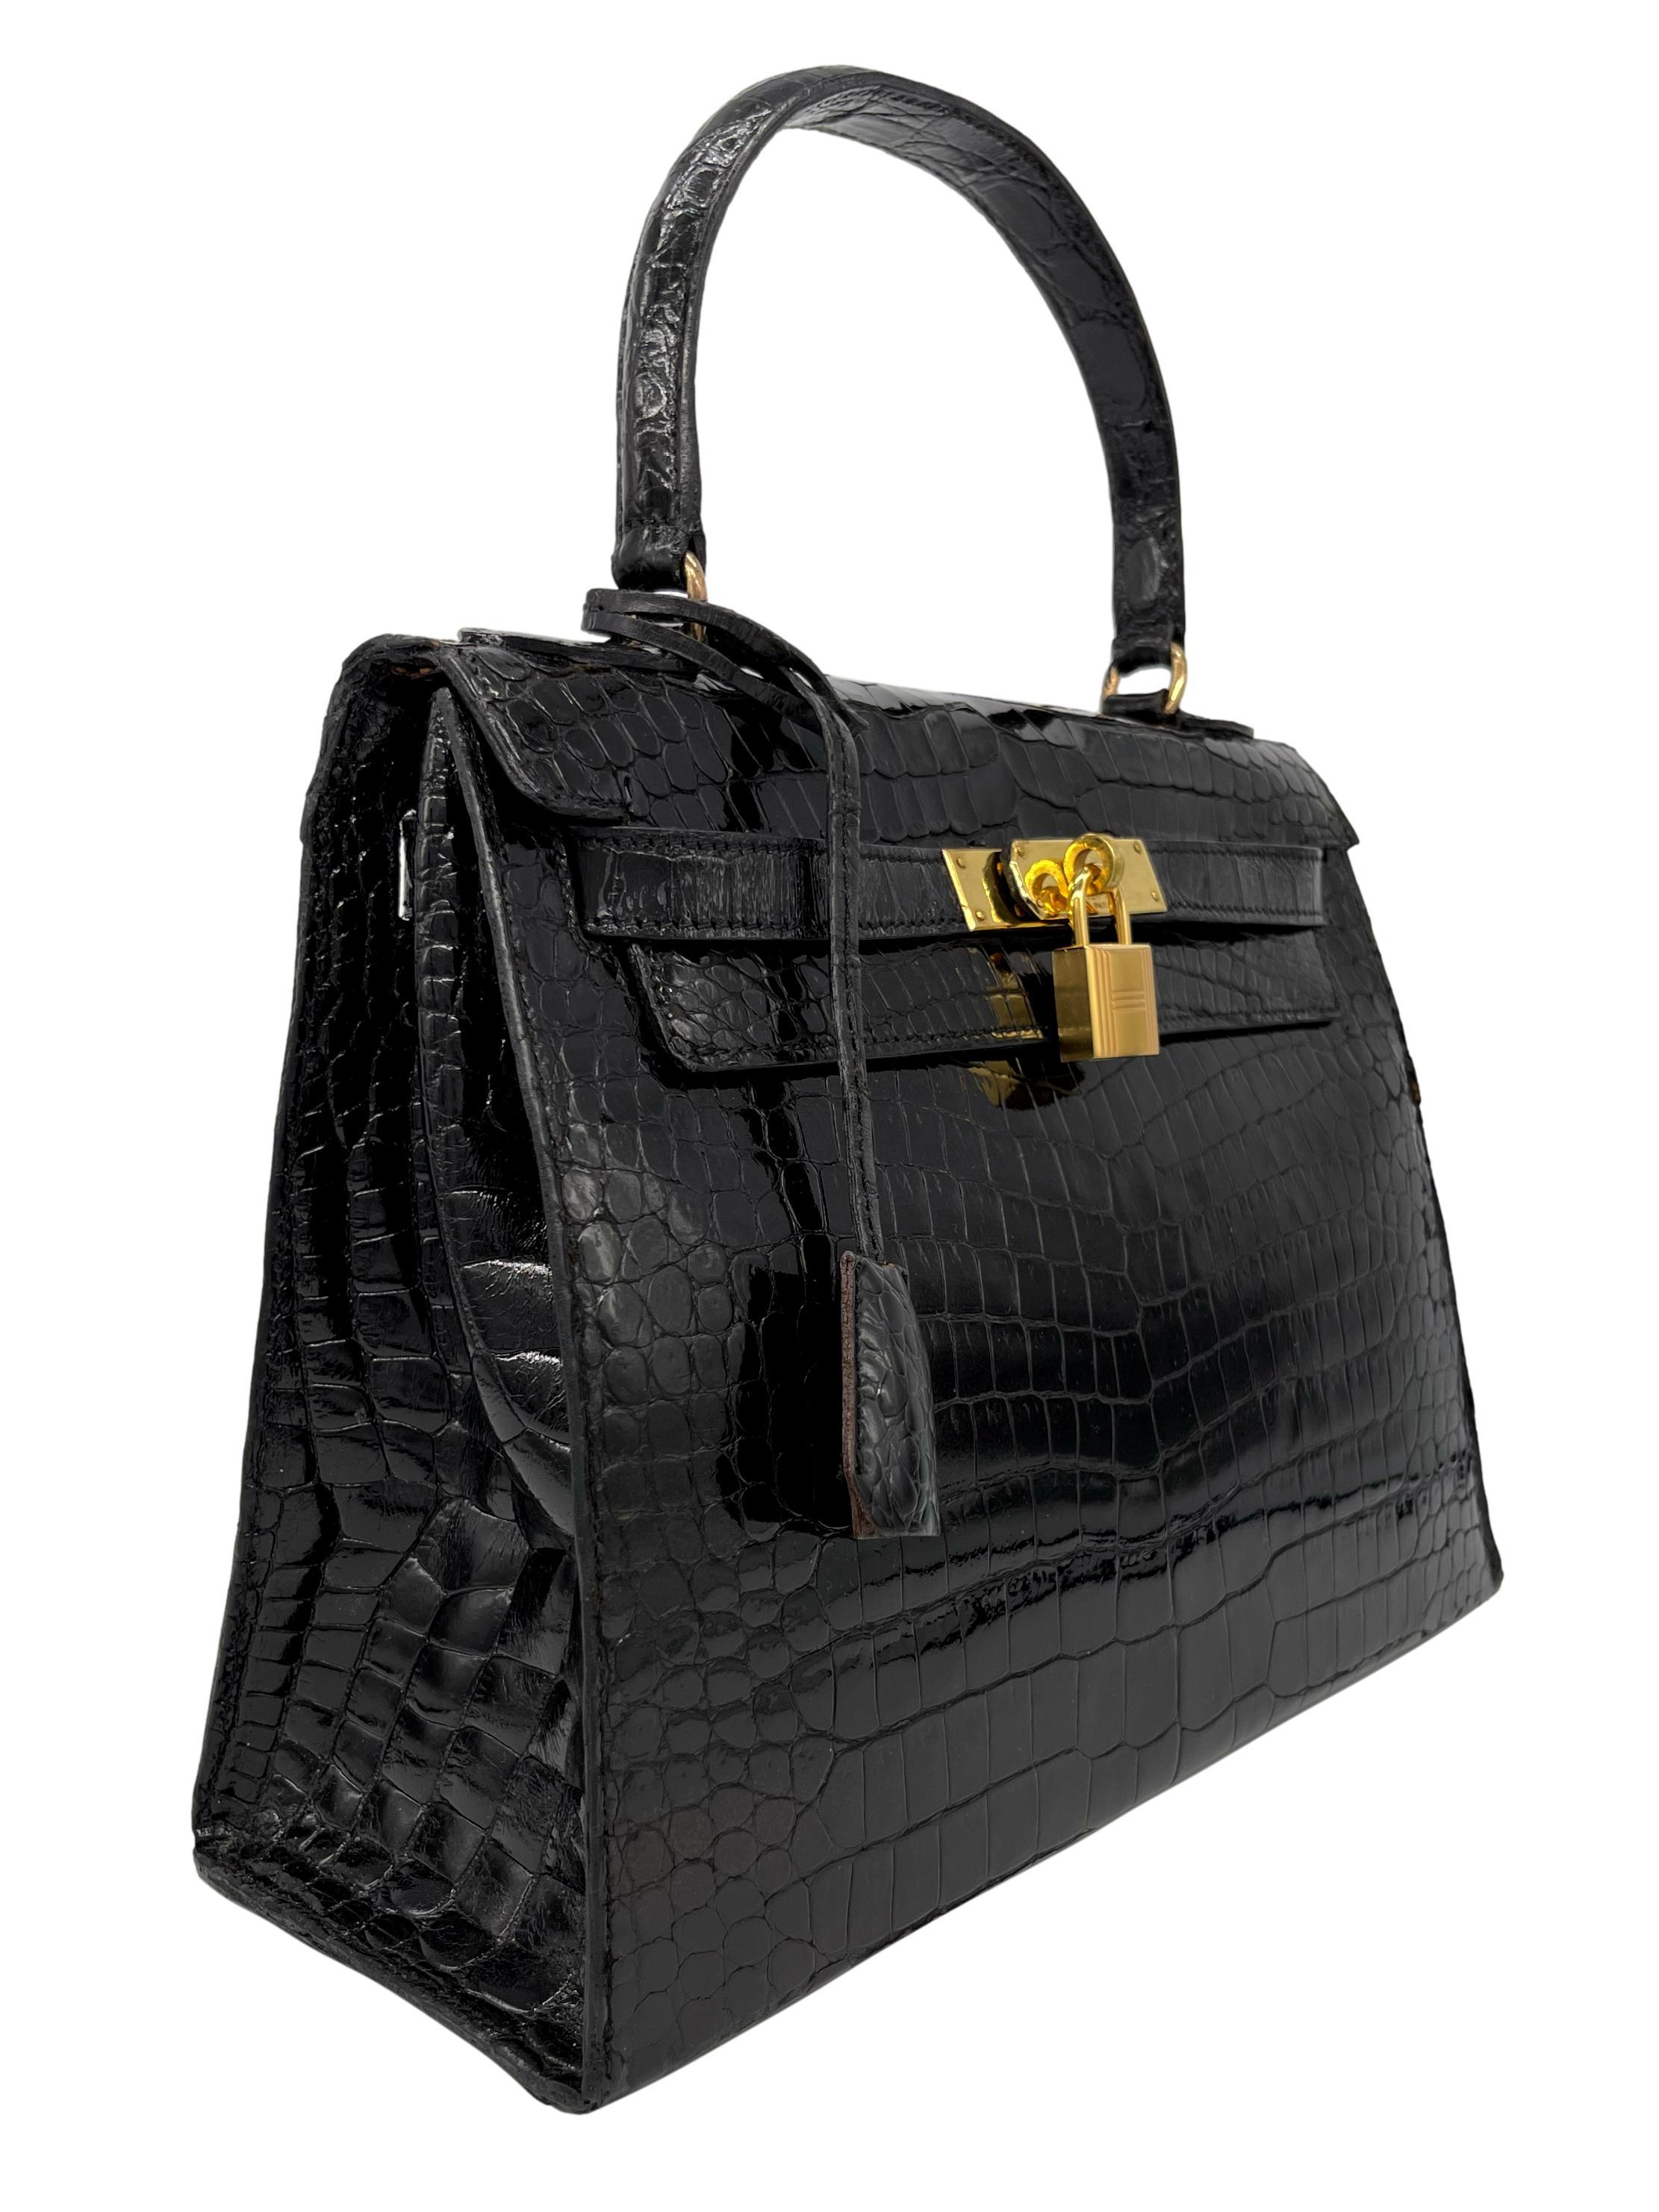 Hermès Rare Vintage Shiny Black Porosus Crocodile Kelly Handbag with Gold Hardware 28cm, 1940. Introduit à l'origine au début des années 1930 sous le nom de Sac à dépêches, le Kelly est devenu mondialement connu après que Grace Kelly, princesse de